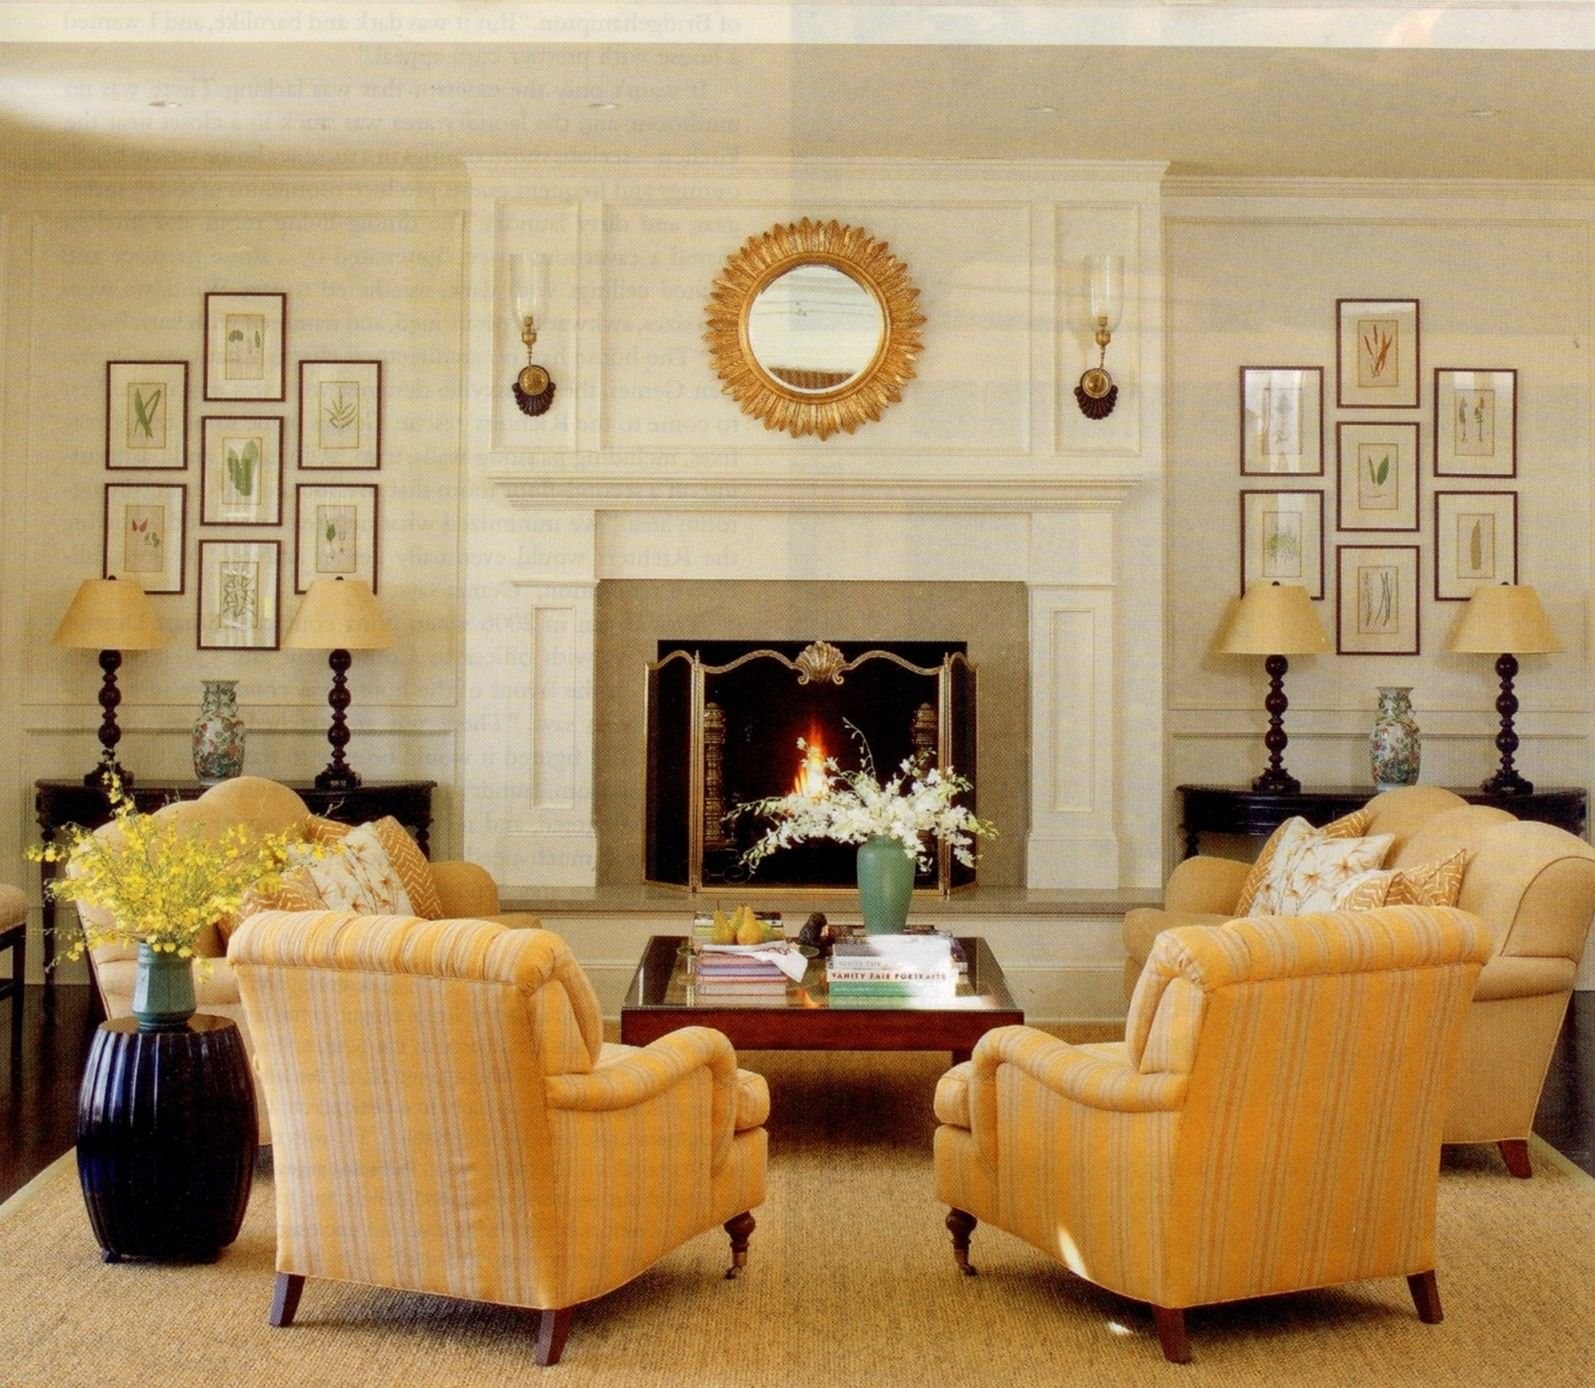 Hall living room. Симметричная композиция в интерьере. Камины в интерьере гостиной. Камин в классическом интерьере. Симметрия в классическом интерьере.